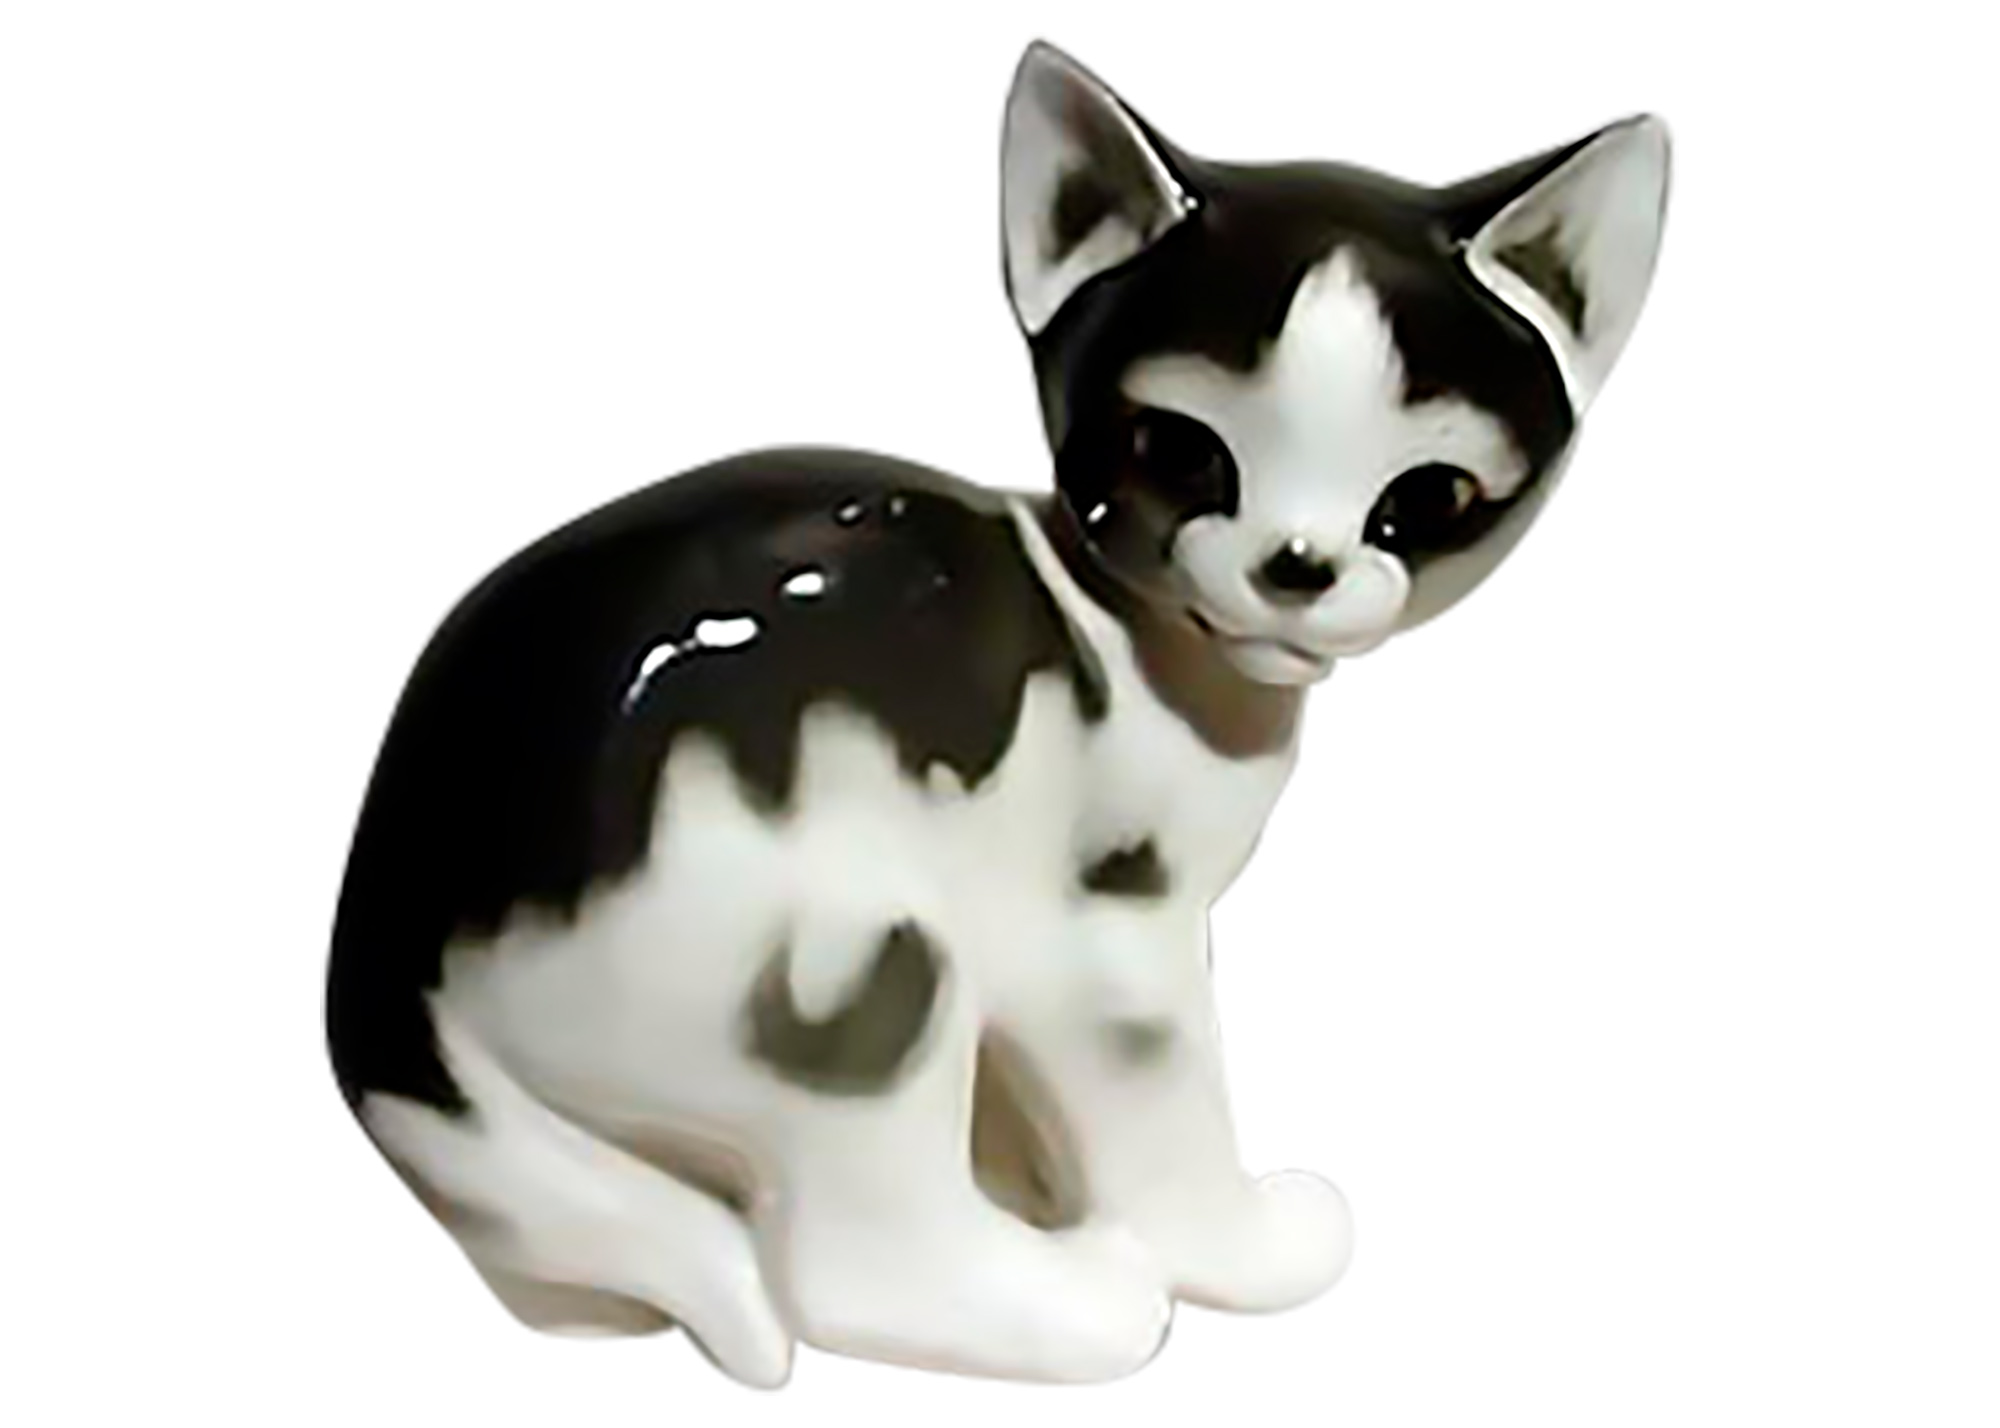 Buy Black and White Porcelain Kitten at GoldenCockerel.com